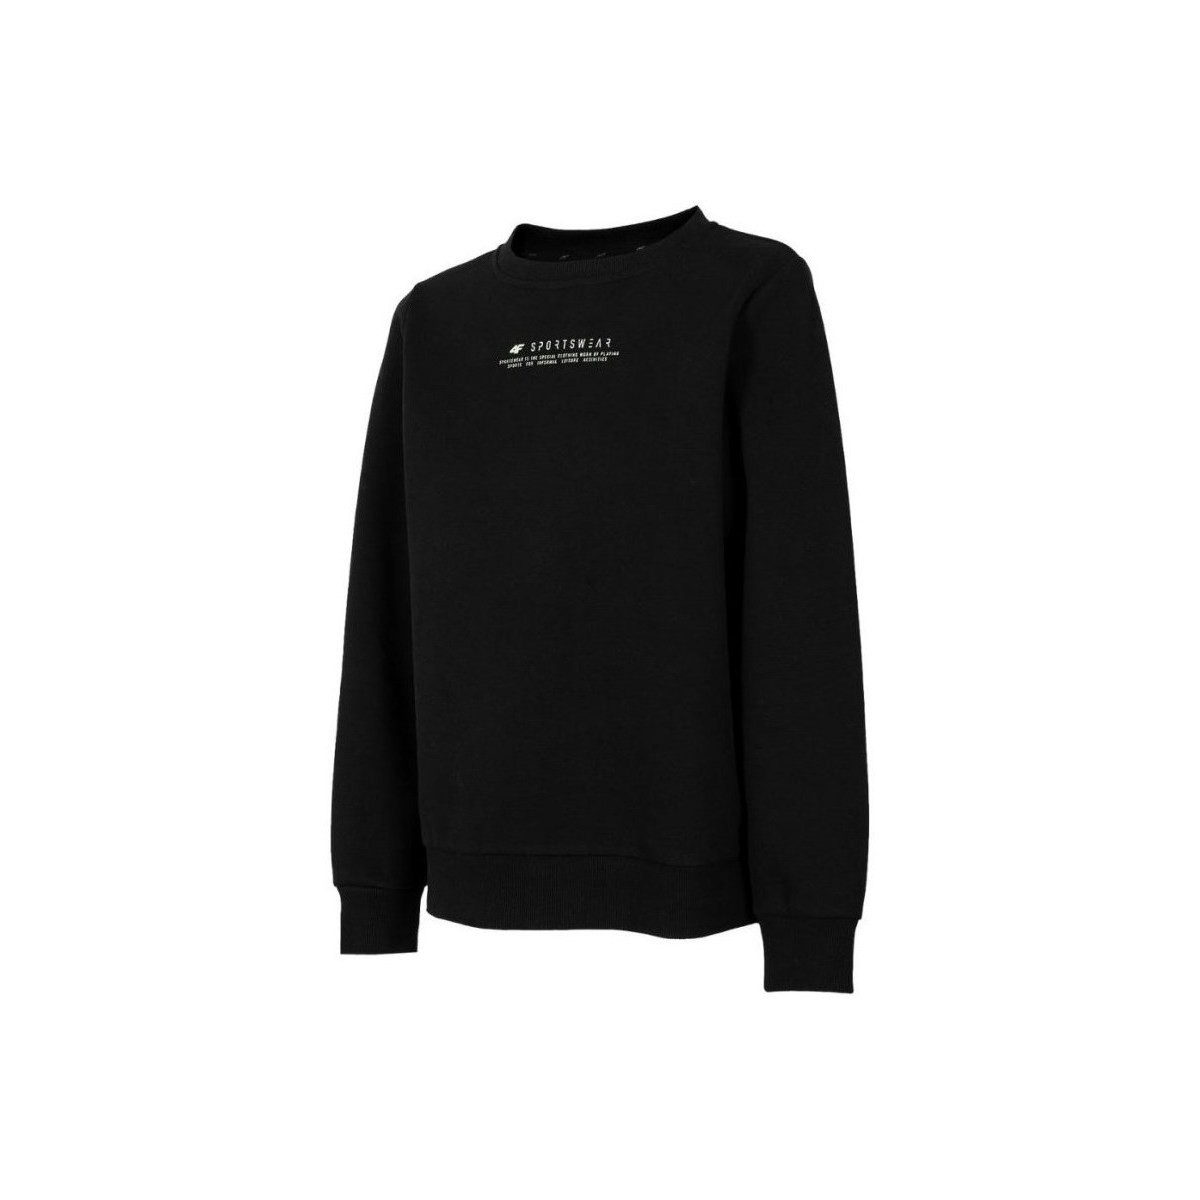 Kleidung Damen Sweatshirts 4F BLD020 Schwarz